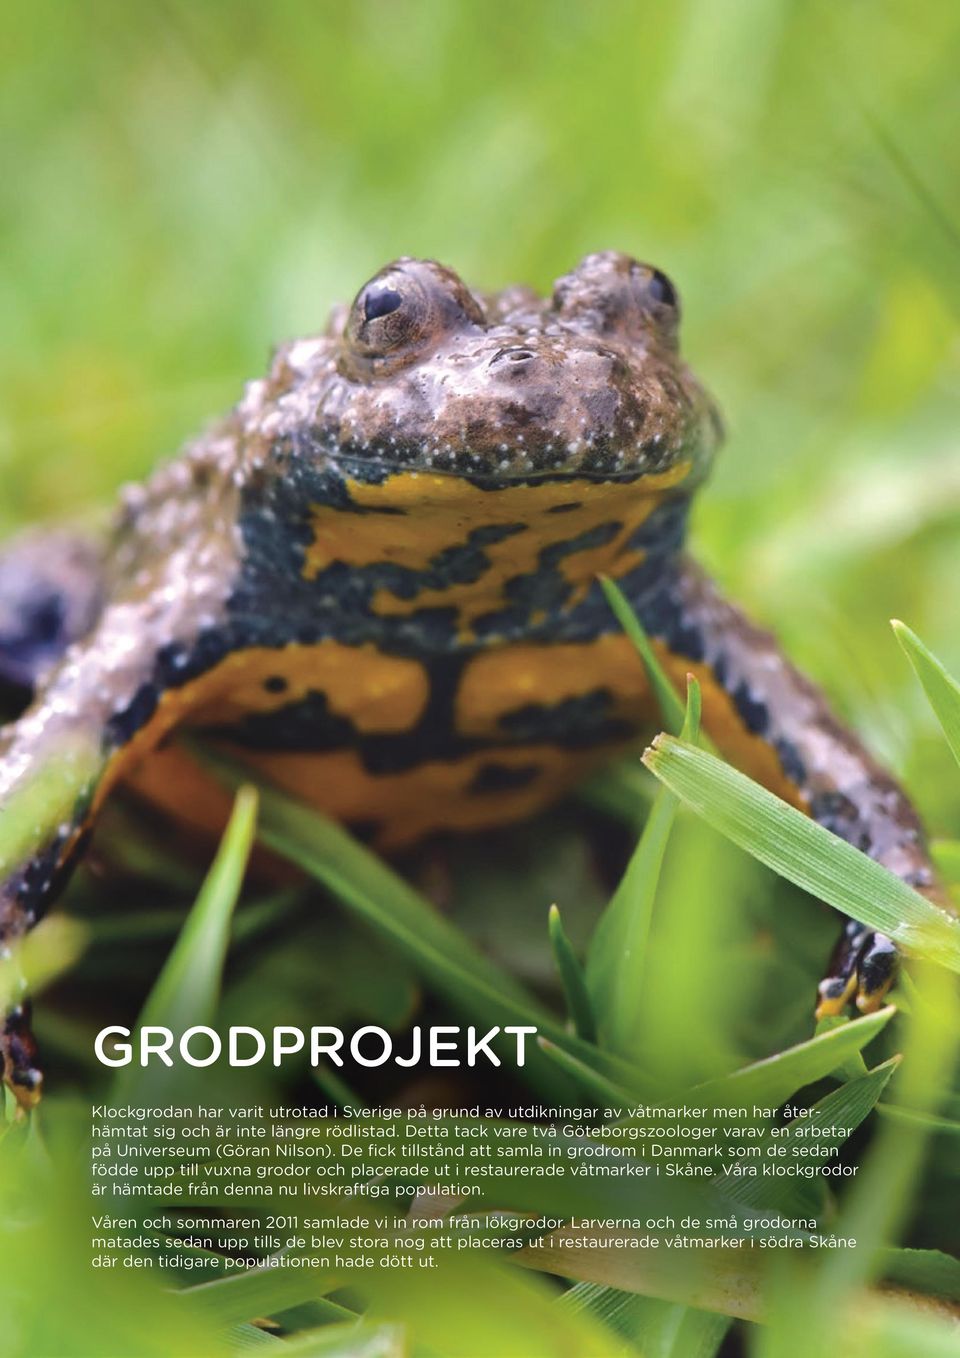 De fick tillstånd att samla in grodrom i Danmark som de sedan födde upp till vuxna grodor och placerade ut i restaurerade våtmarker i Skåne.